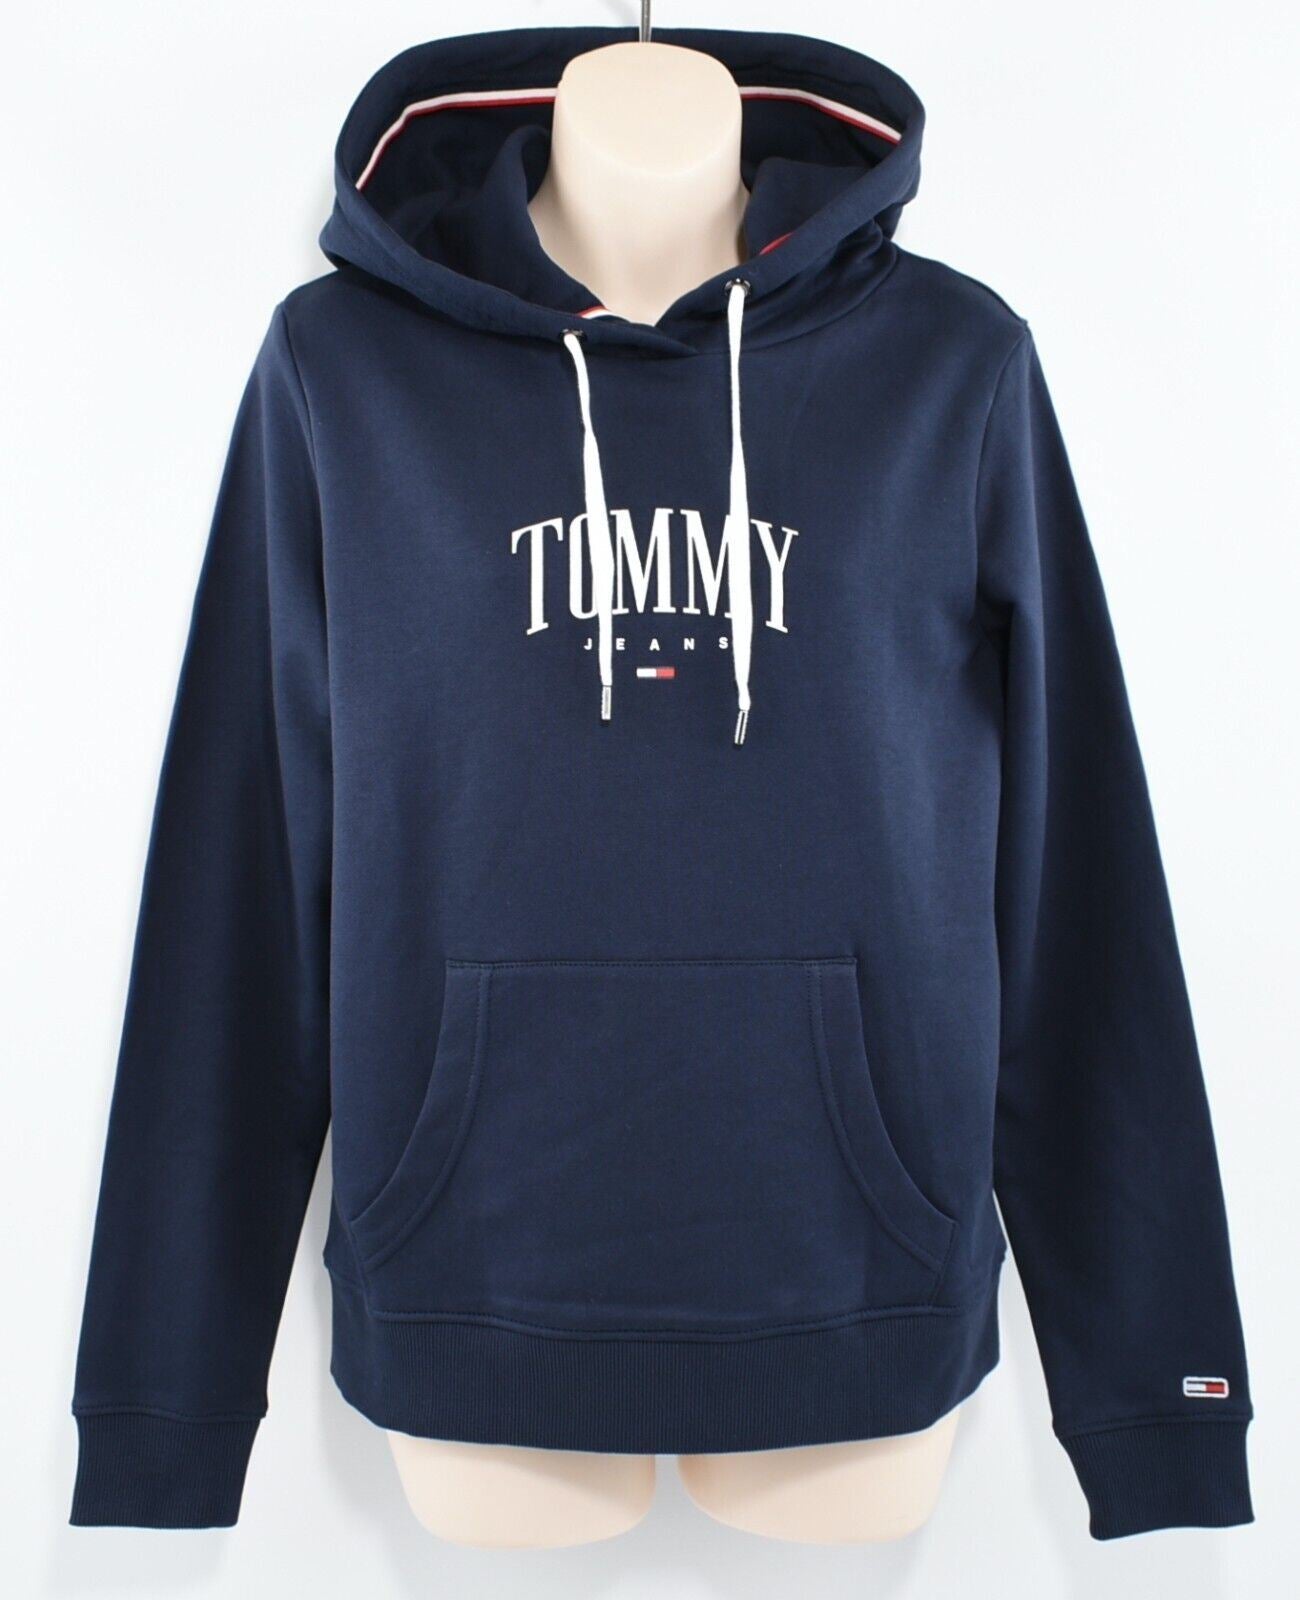 TOMMY HILFIGER Women's Logo Hoodie, Hooded Sweatshirt Twilight Navy Blue size XS